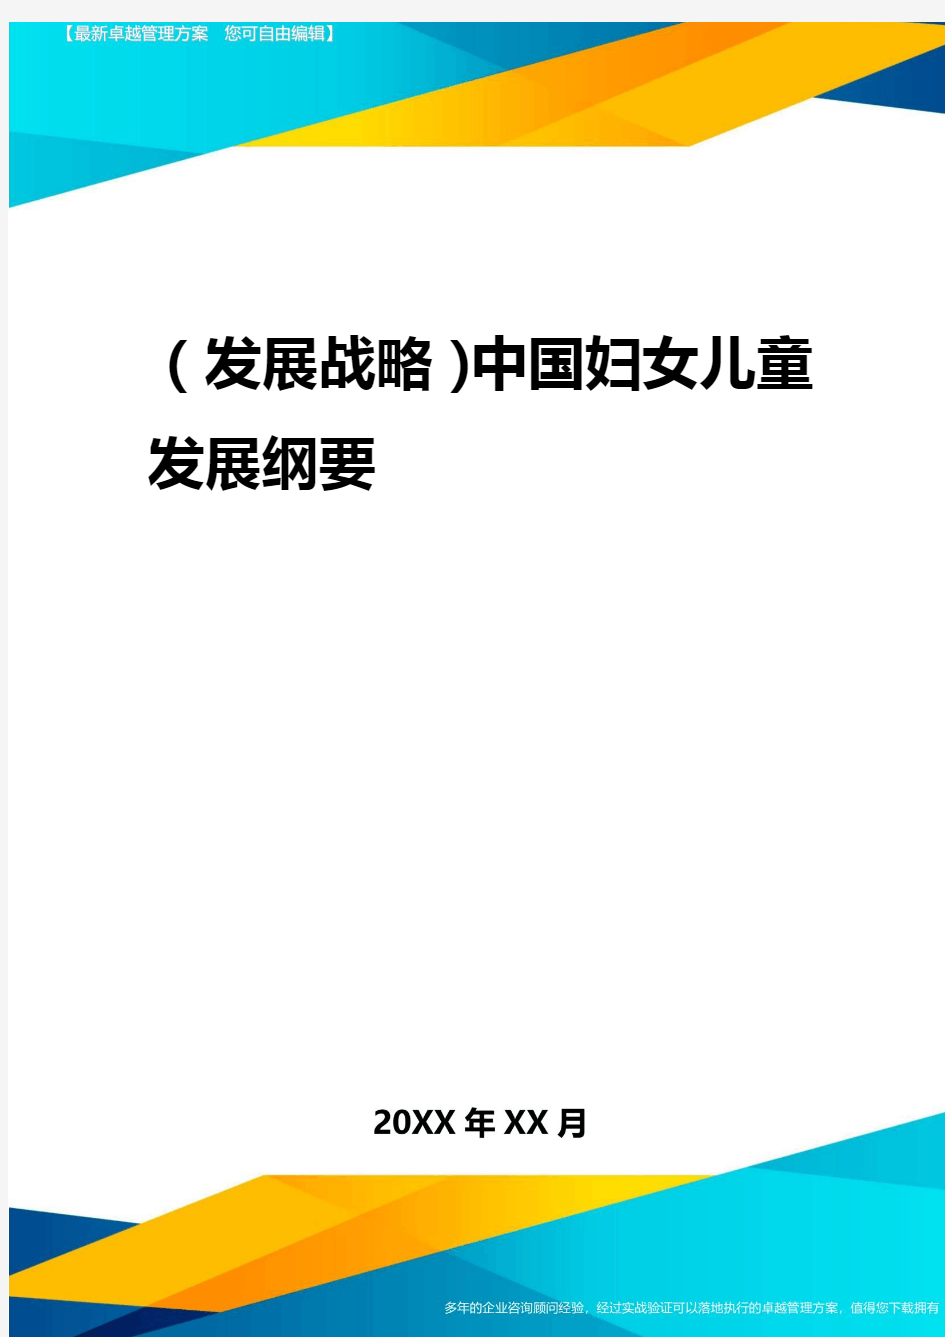 2020年(发展战略)中国妇女儿童发展纲要